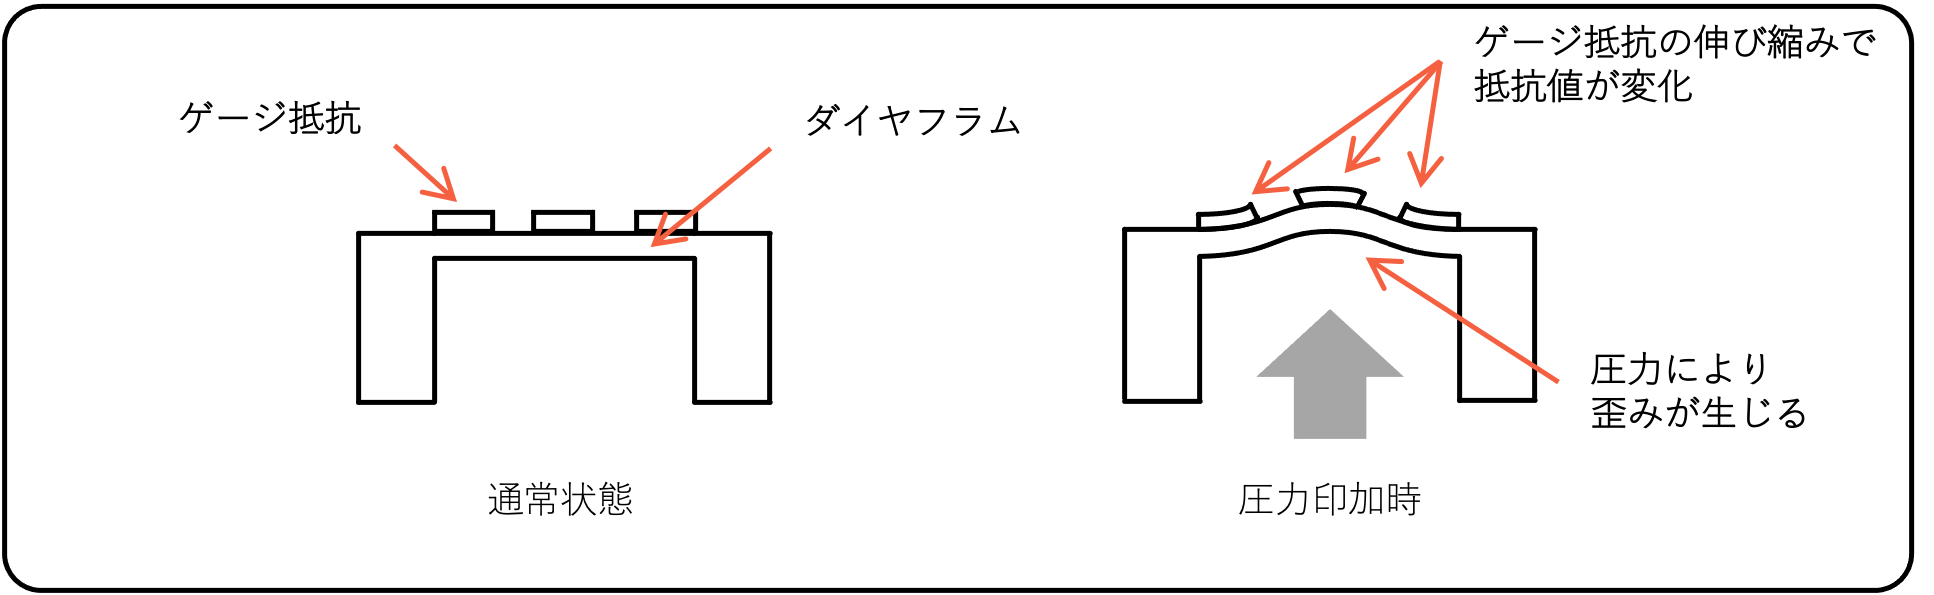 図1. ゲージ式圧力センサー概略構造